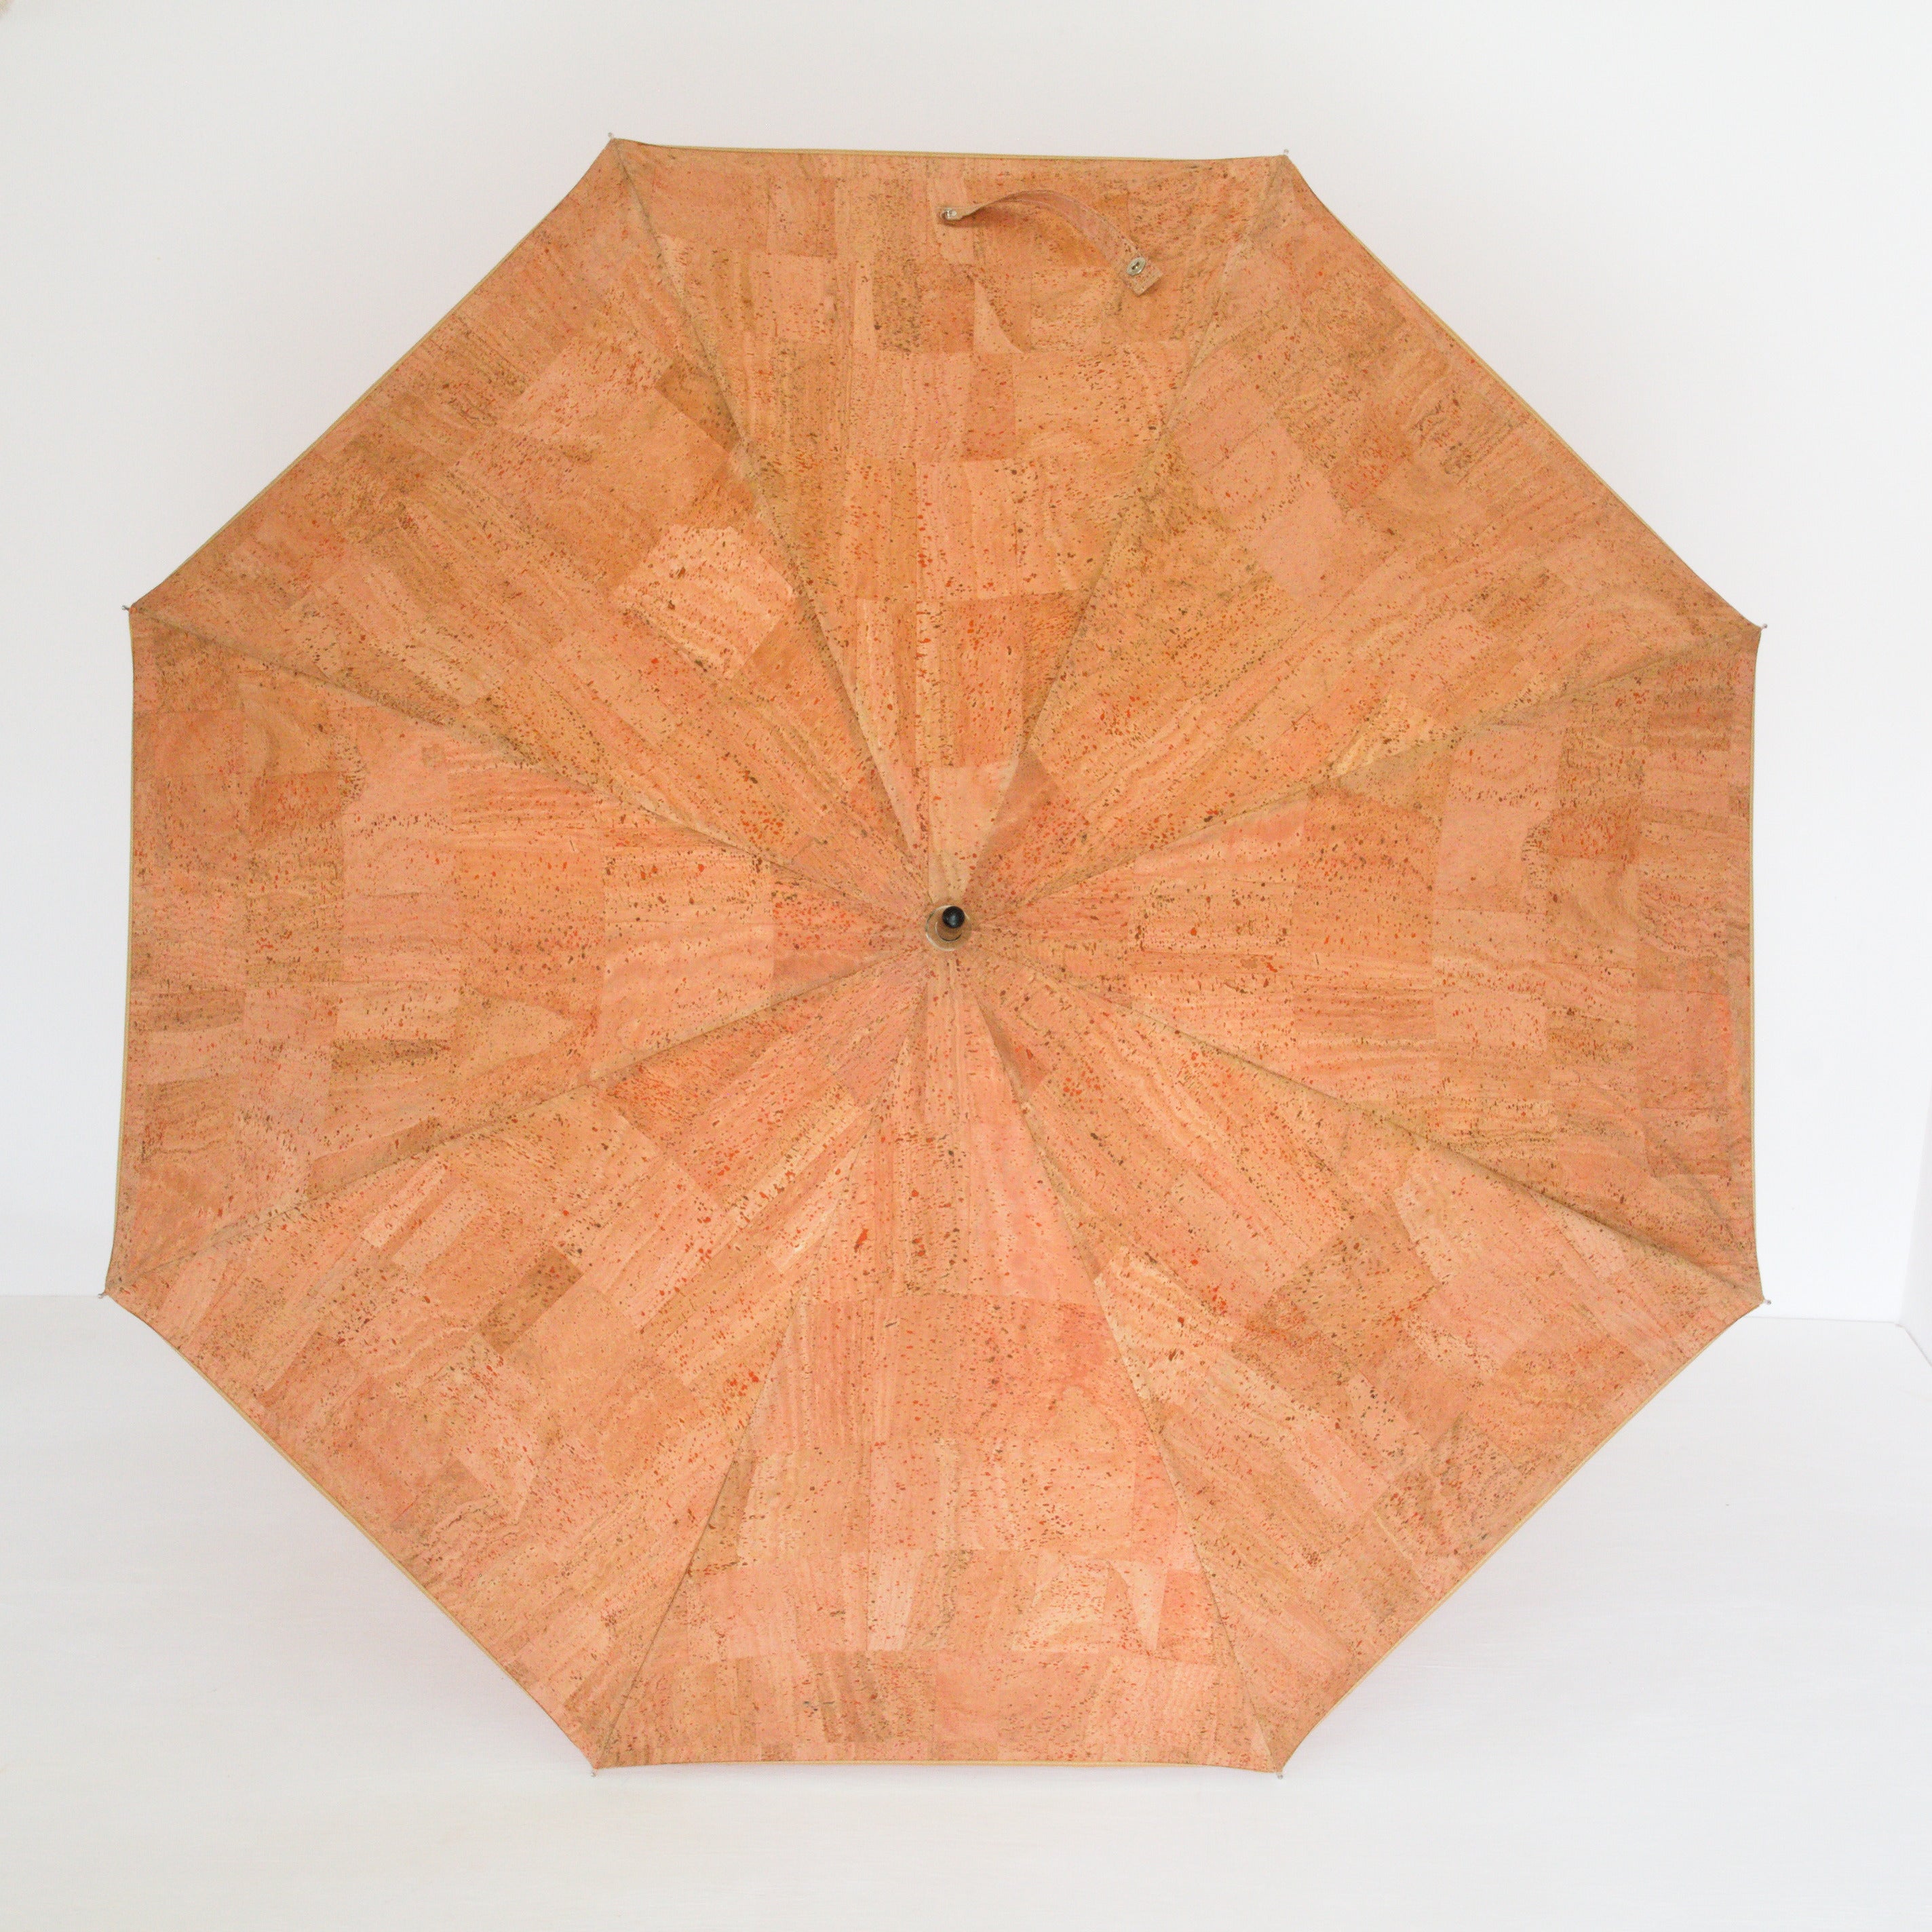 Kork Regenschirm * vegan * Regenschirm für Damen und Herren * Holzgriff * hergestellt in Portugal